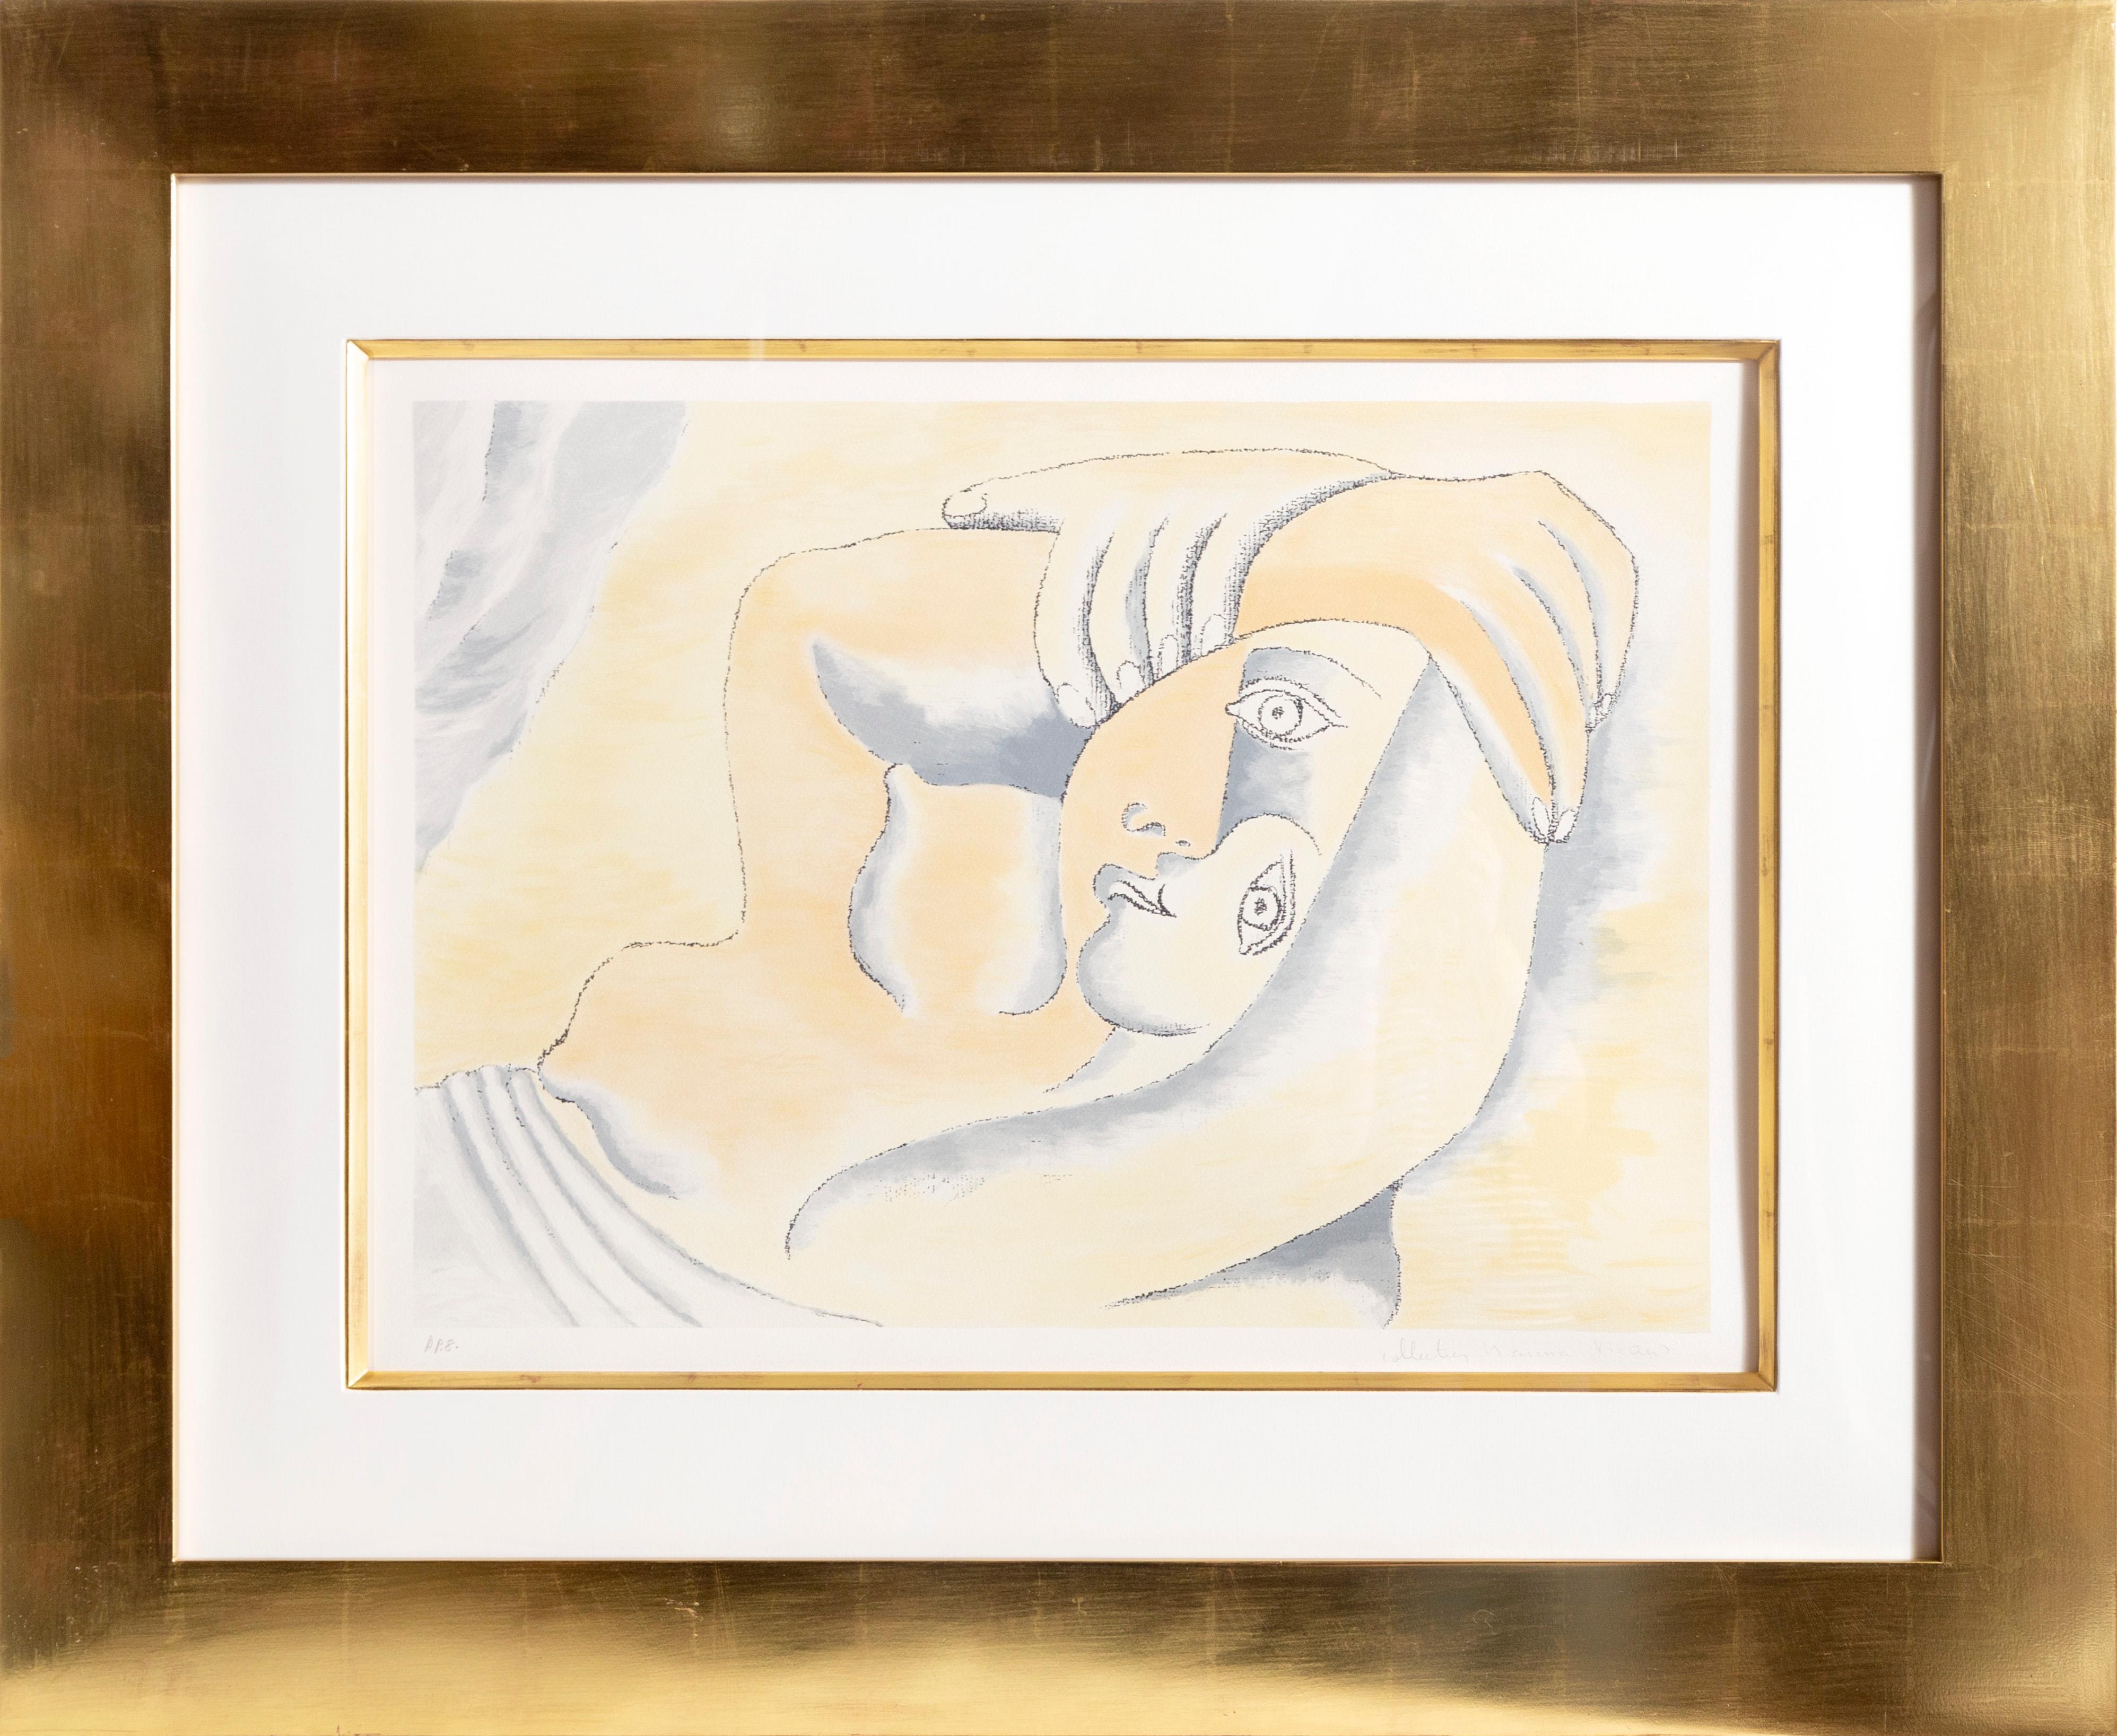 Eine Lithographie aus der Marina Picasso Estate Collection nach dem Gemälde "Femme Couchee" von Pablo Picasso. Das Originalgemälde wurde 1929 fertiggestellt. In den 1970er Jahren, nach Picassos Tod, autorisierte Marina Picasso, seine Enkelin, die